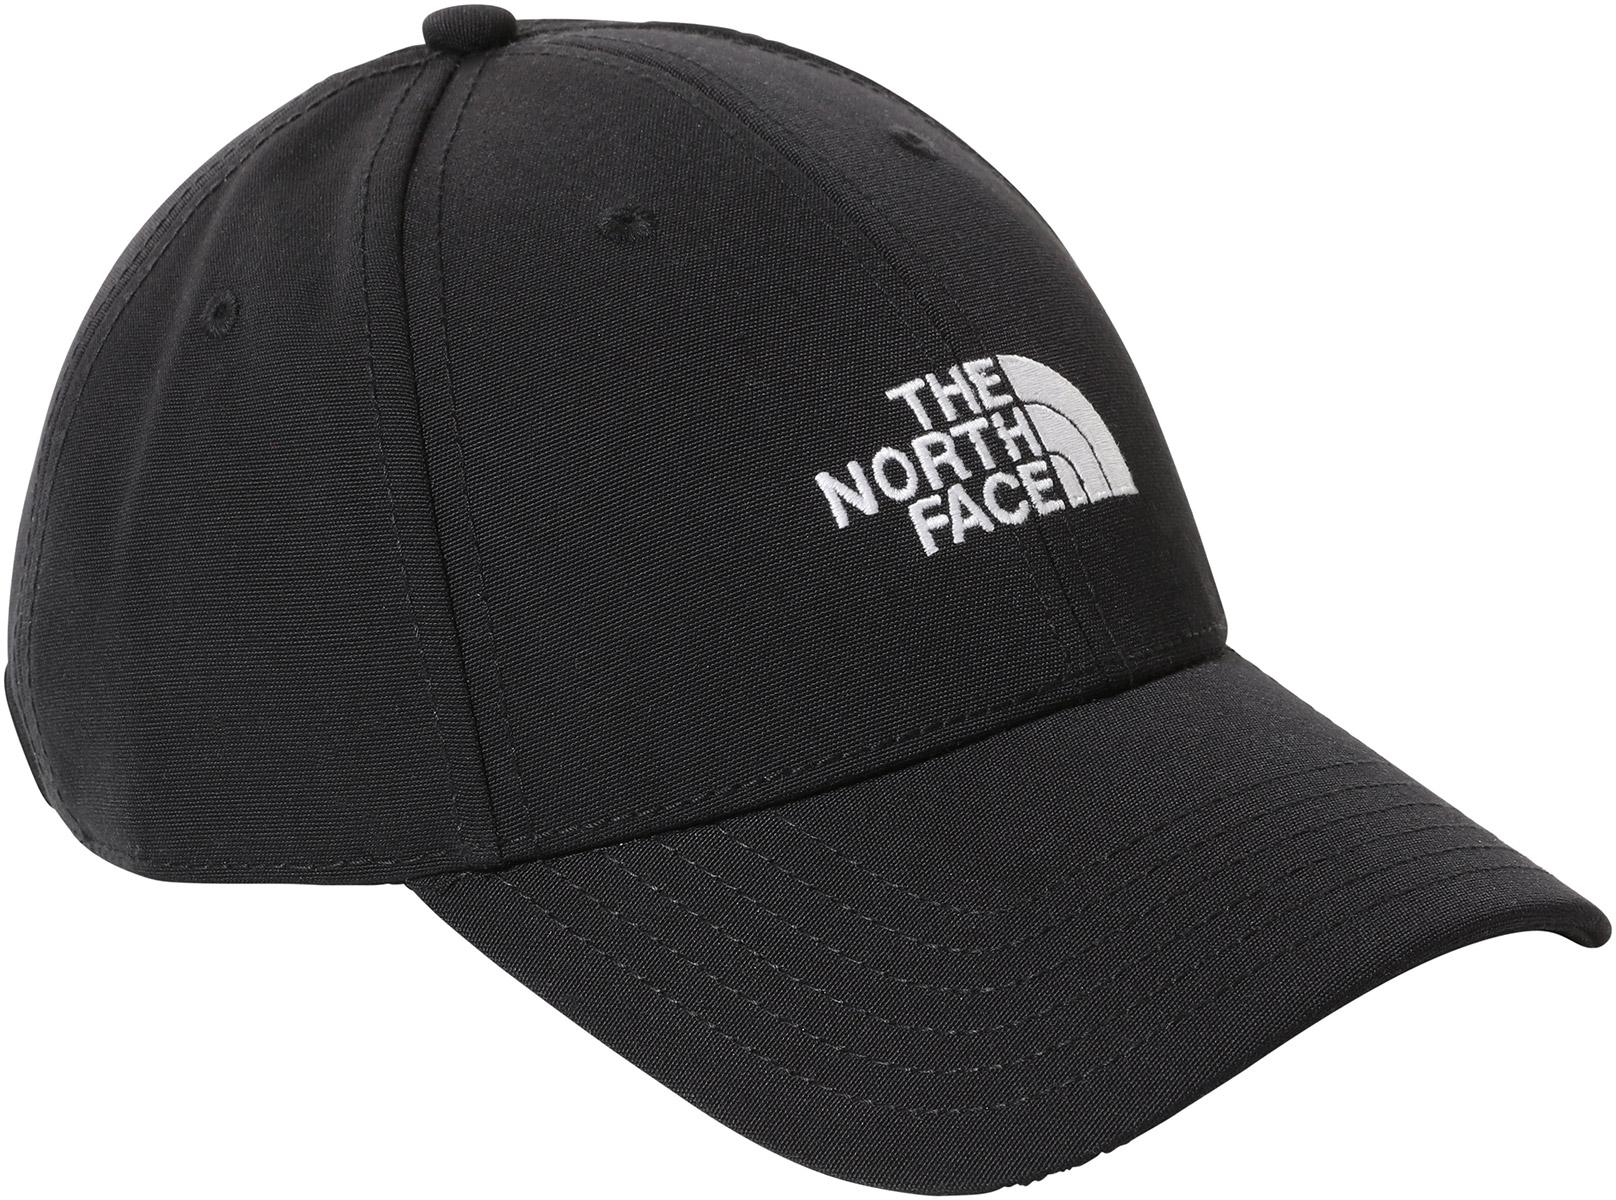 Raak verstrikt Onderzoek het Productiecentrum The North Face Recycled 66 Classic Hat | Wiggle